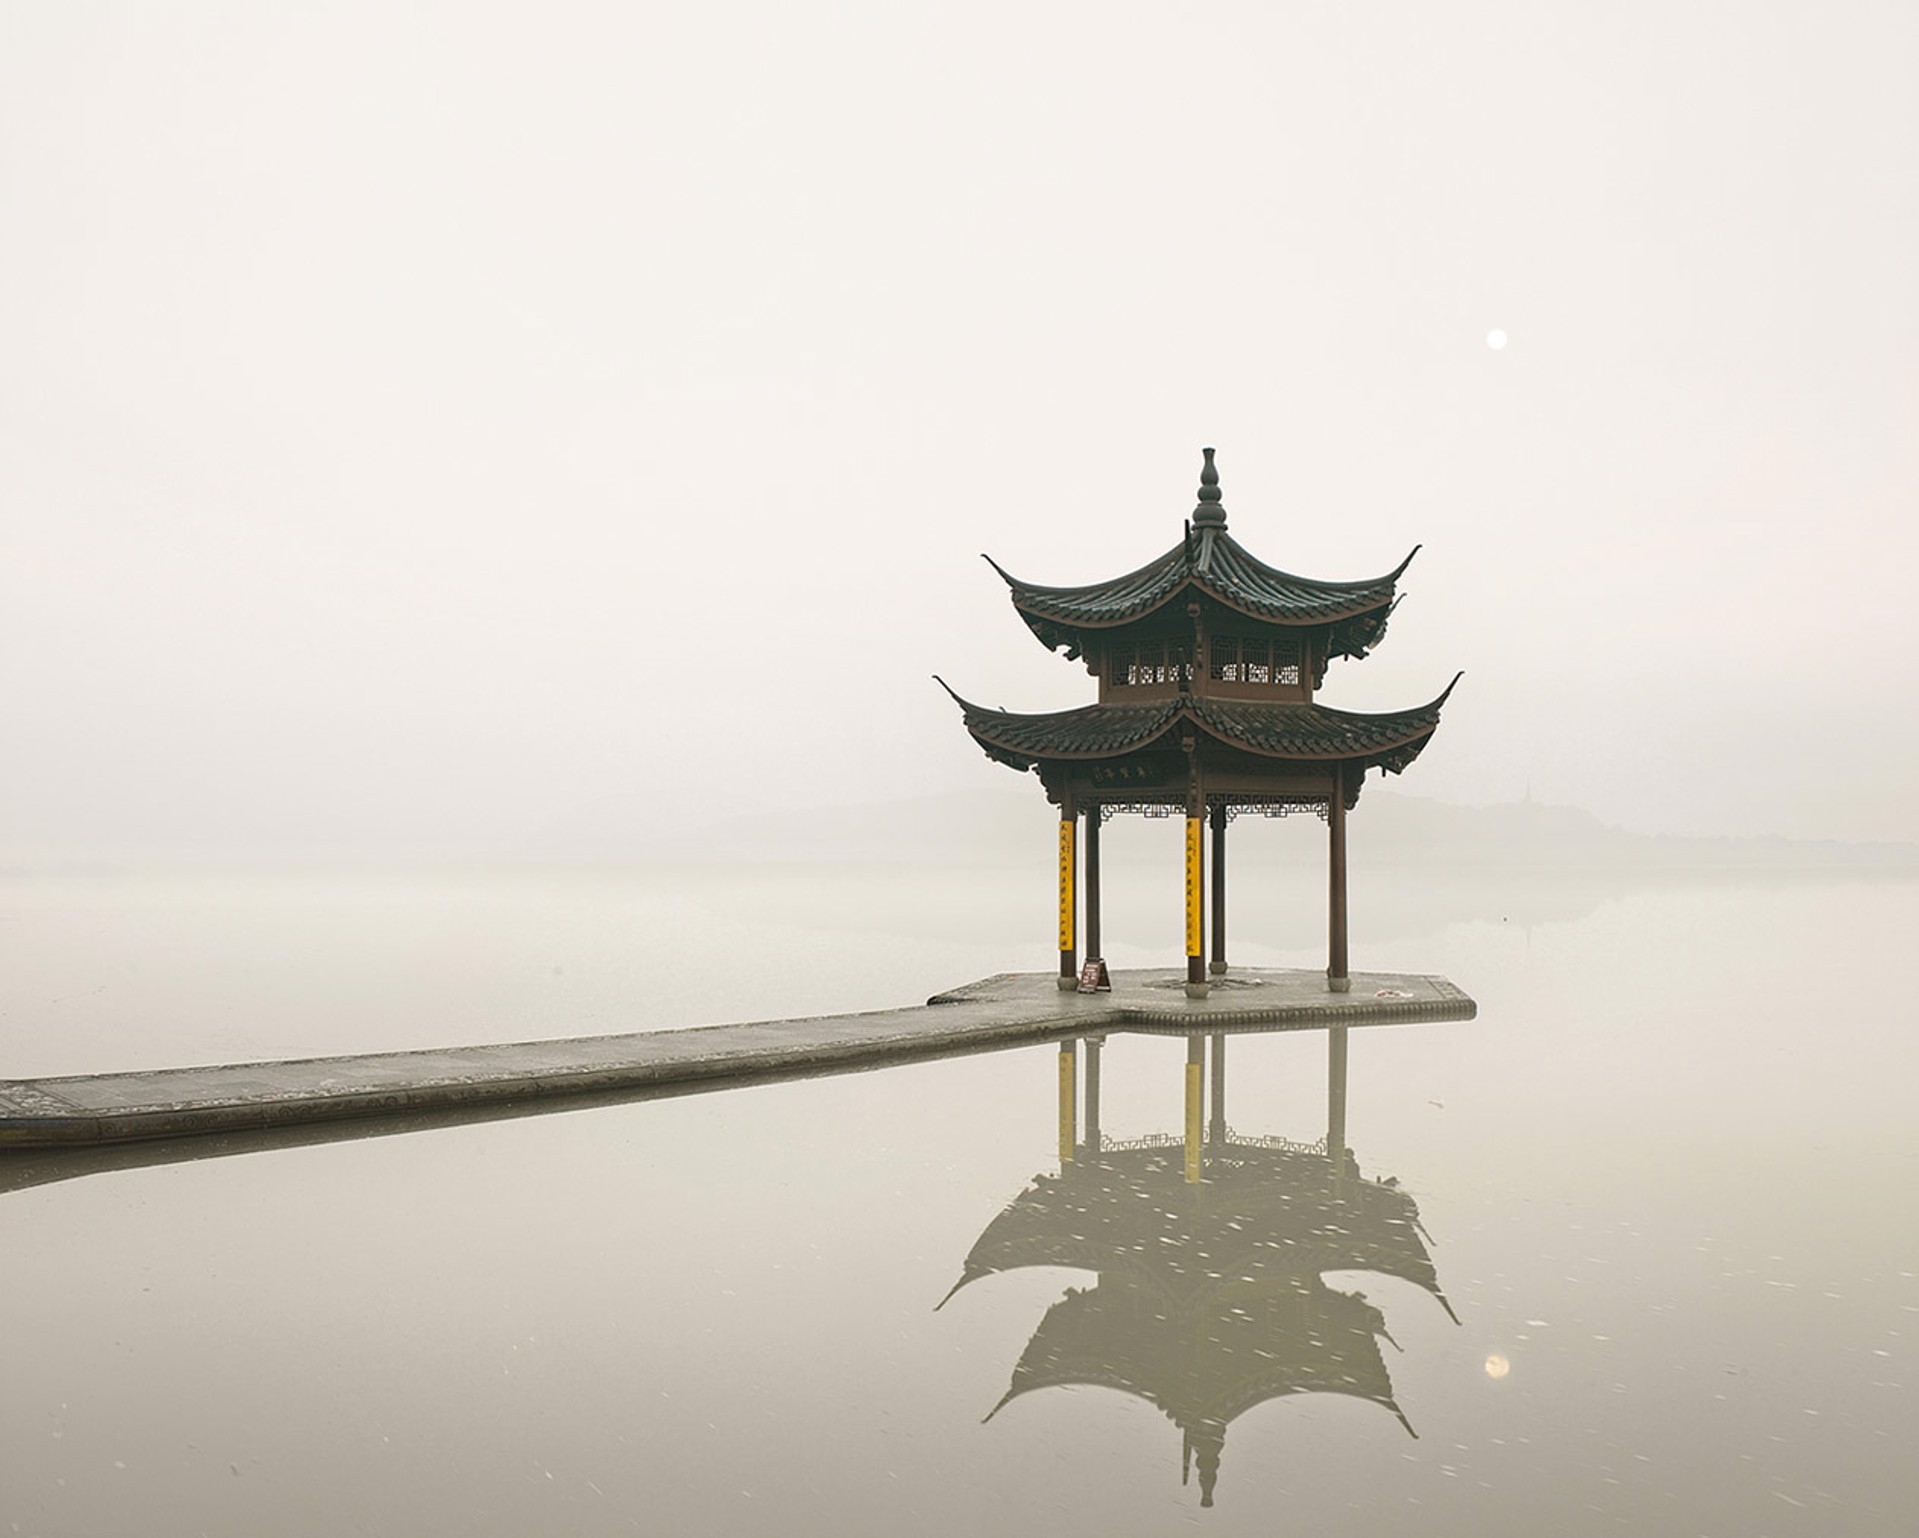 Pagoda, West Lake, Hangzhou, China, 2011 by David Burdeny